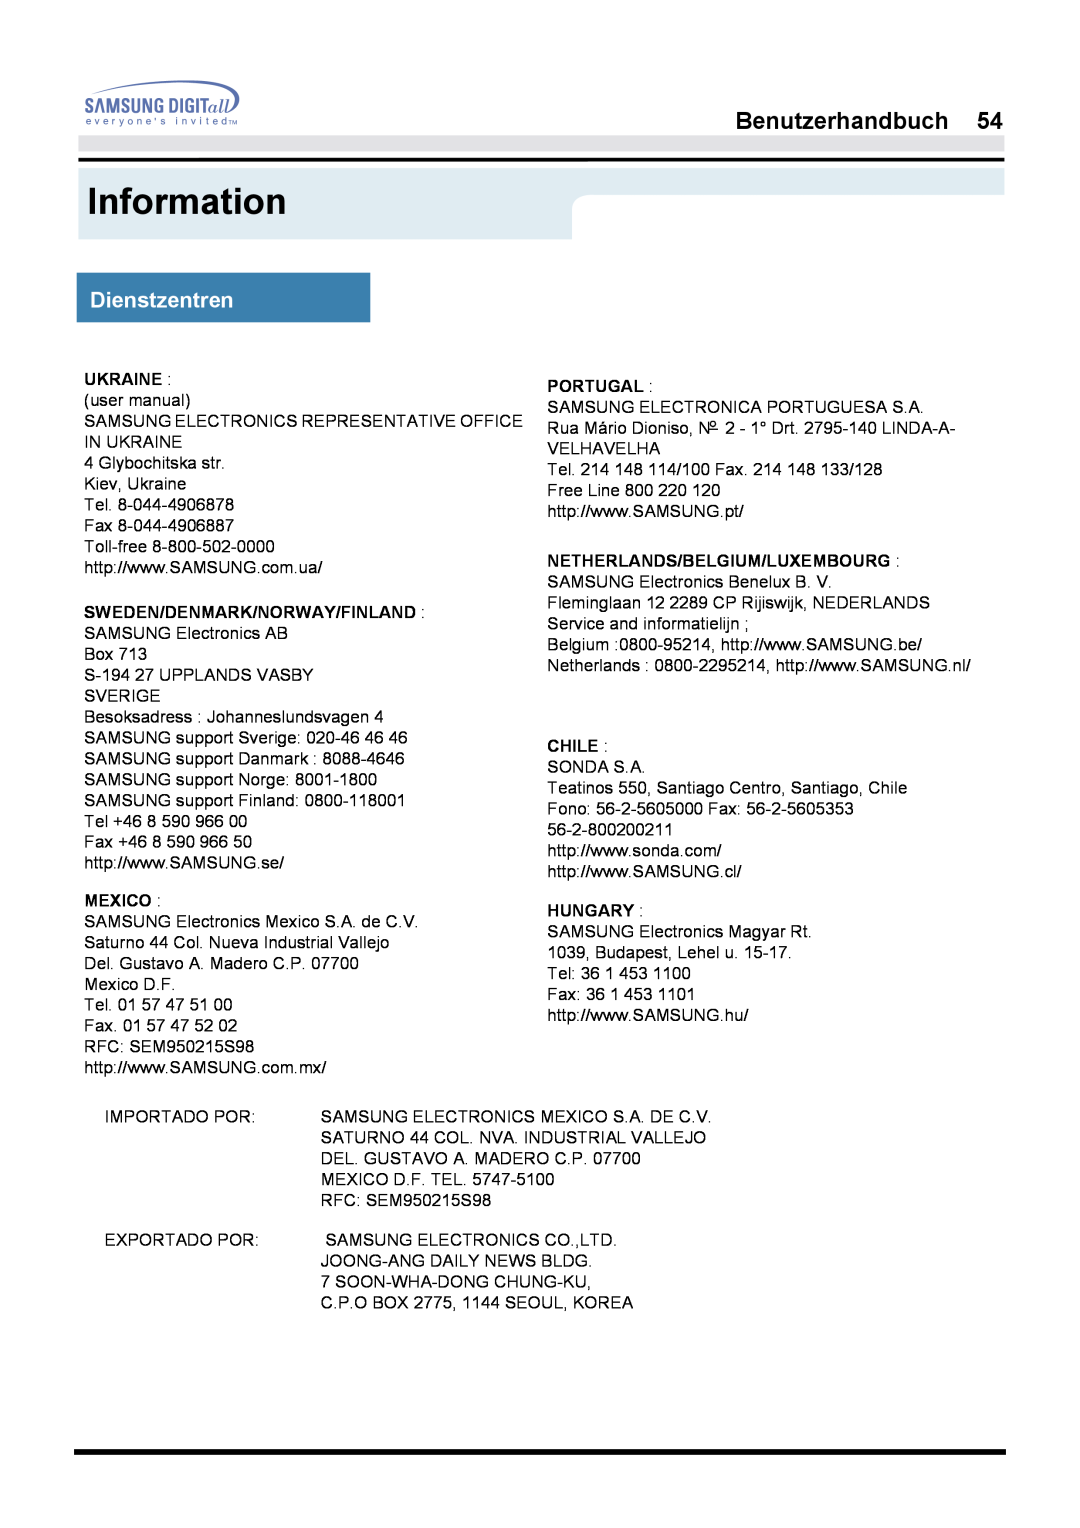 Samsung GH17LSAN/EDC manual Information, Benutzerhandbuch, Dienstzentren, Sweden/Denmark/Norway/Finland, Mexico, Portugal 